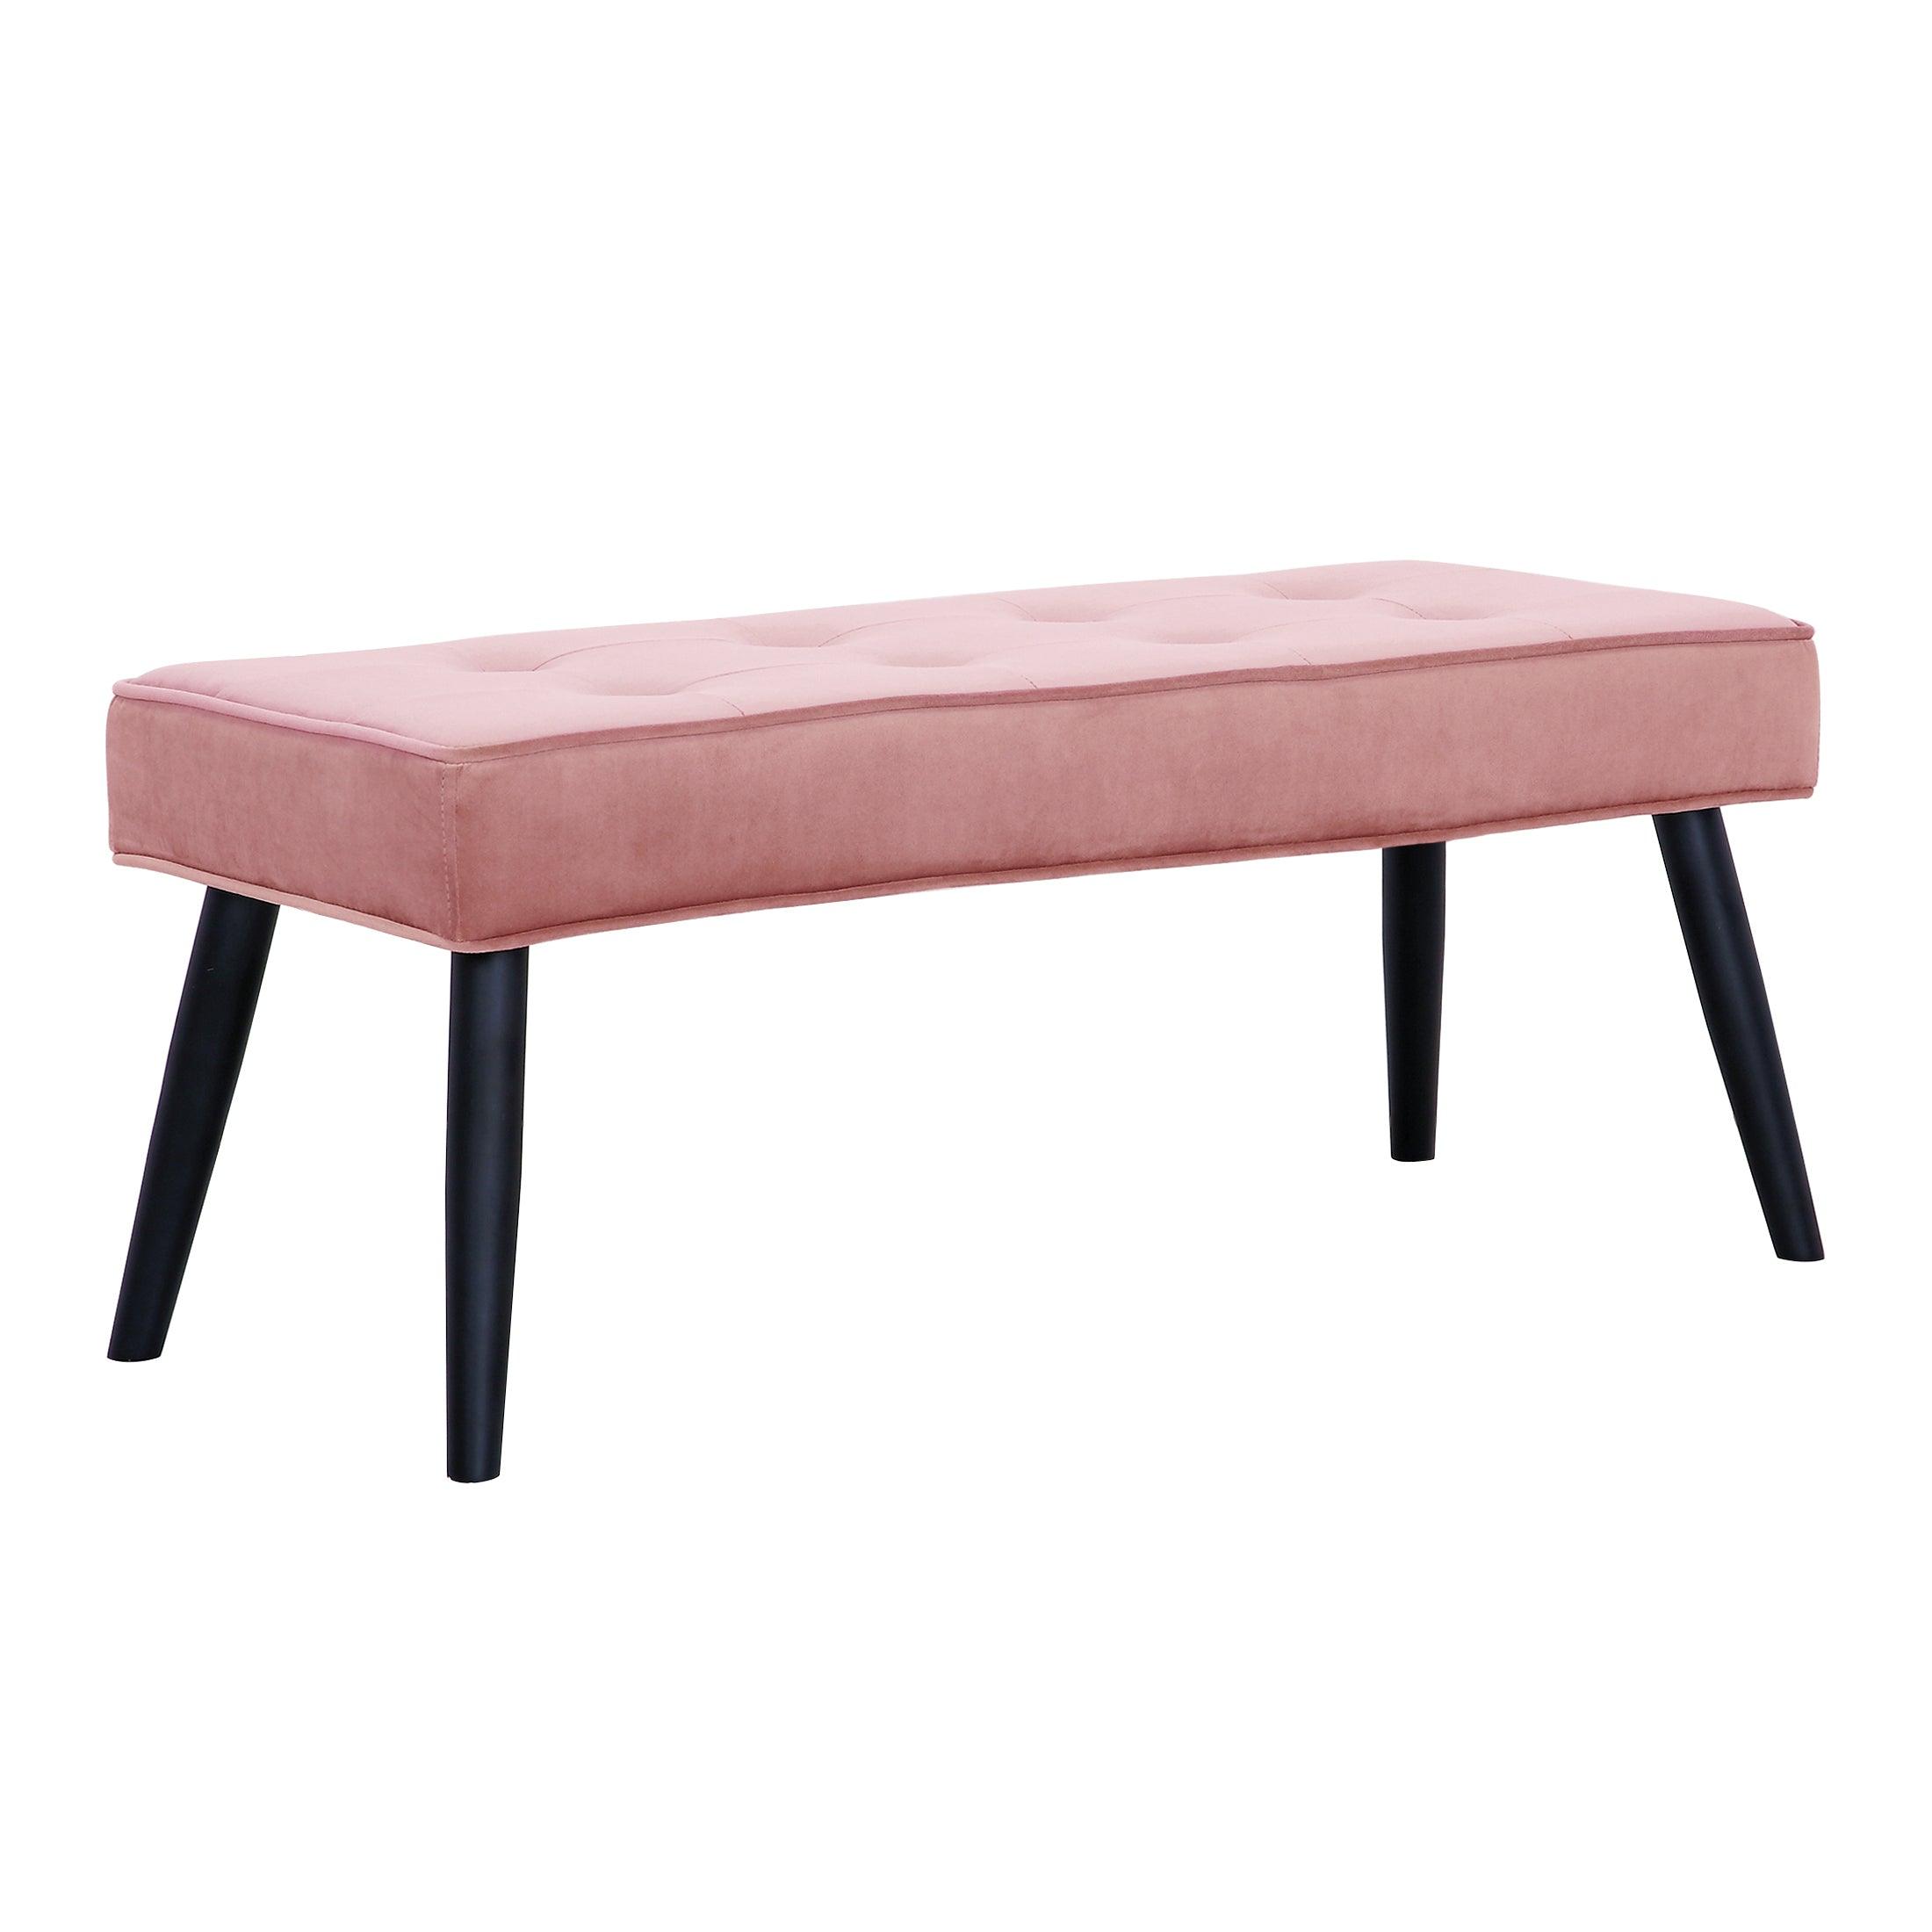 Alaia Tufted Velvet Upholstered Bench - Costaelm